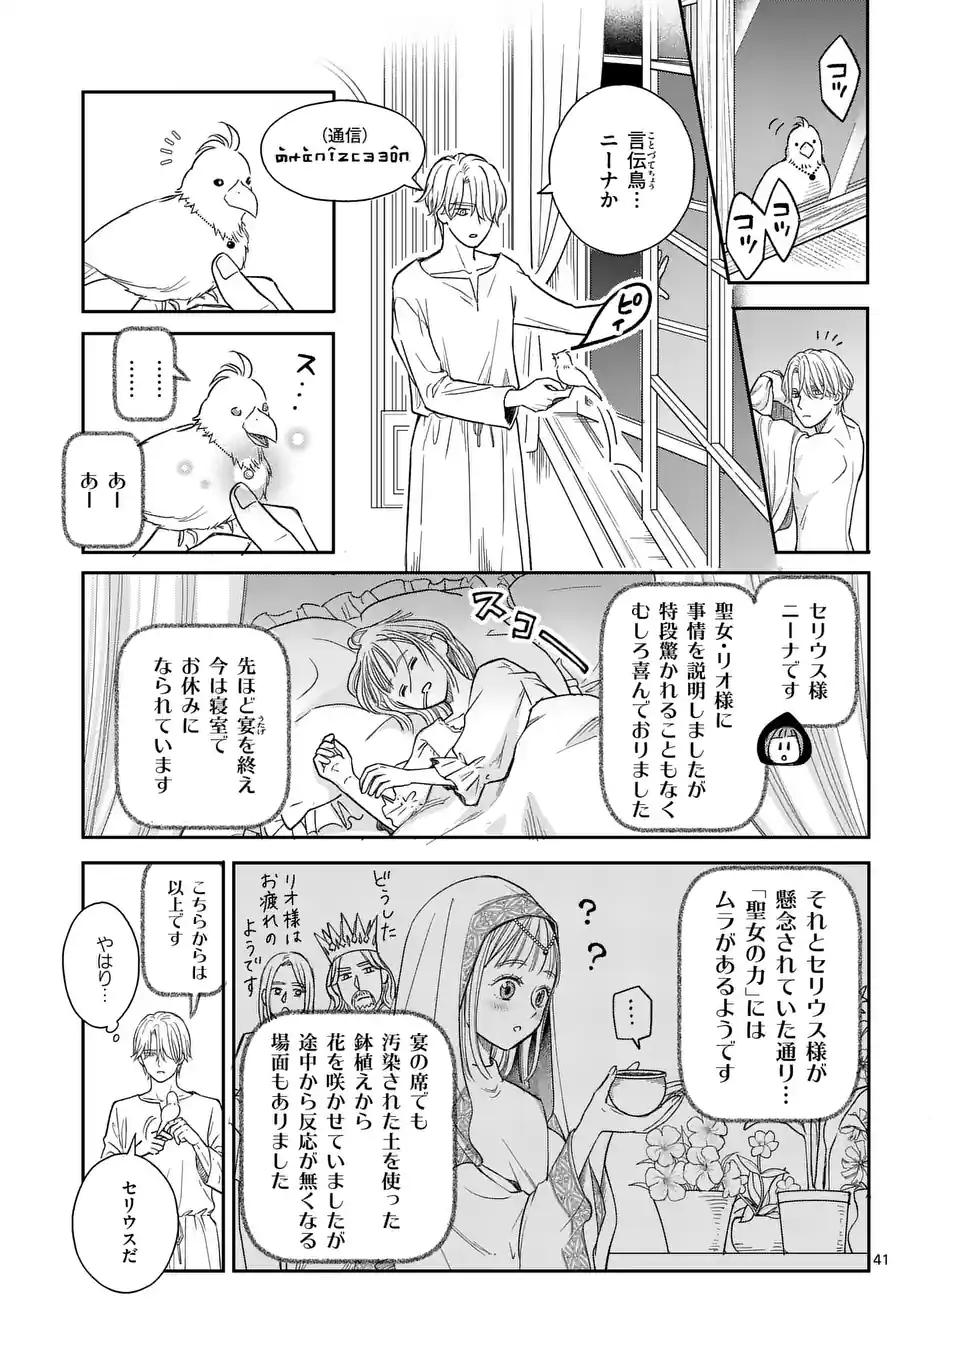 Makizoe de Isekai ni Yobidasareta no de, Sekai Kanmushi shite Wagashi Tsukurimasu - Chapter 1 - Page 41